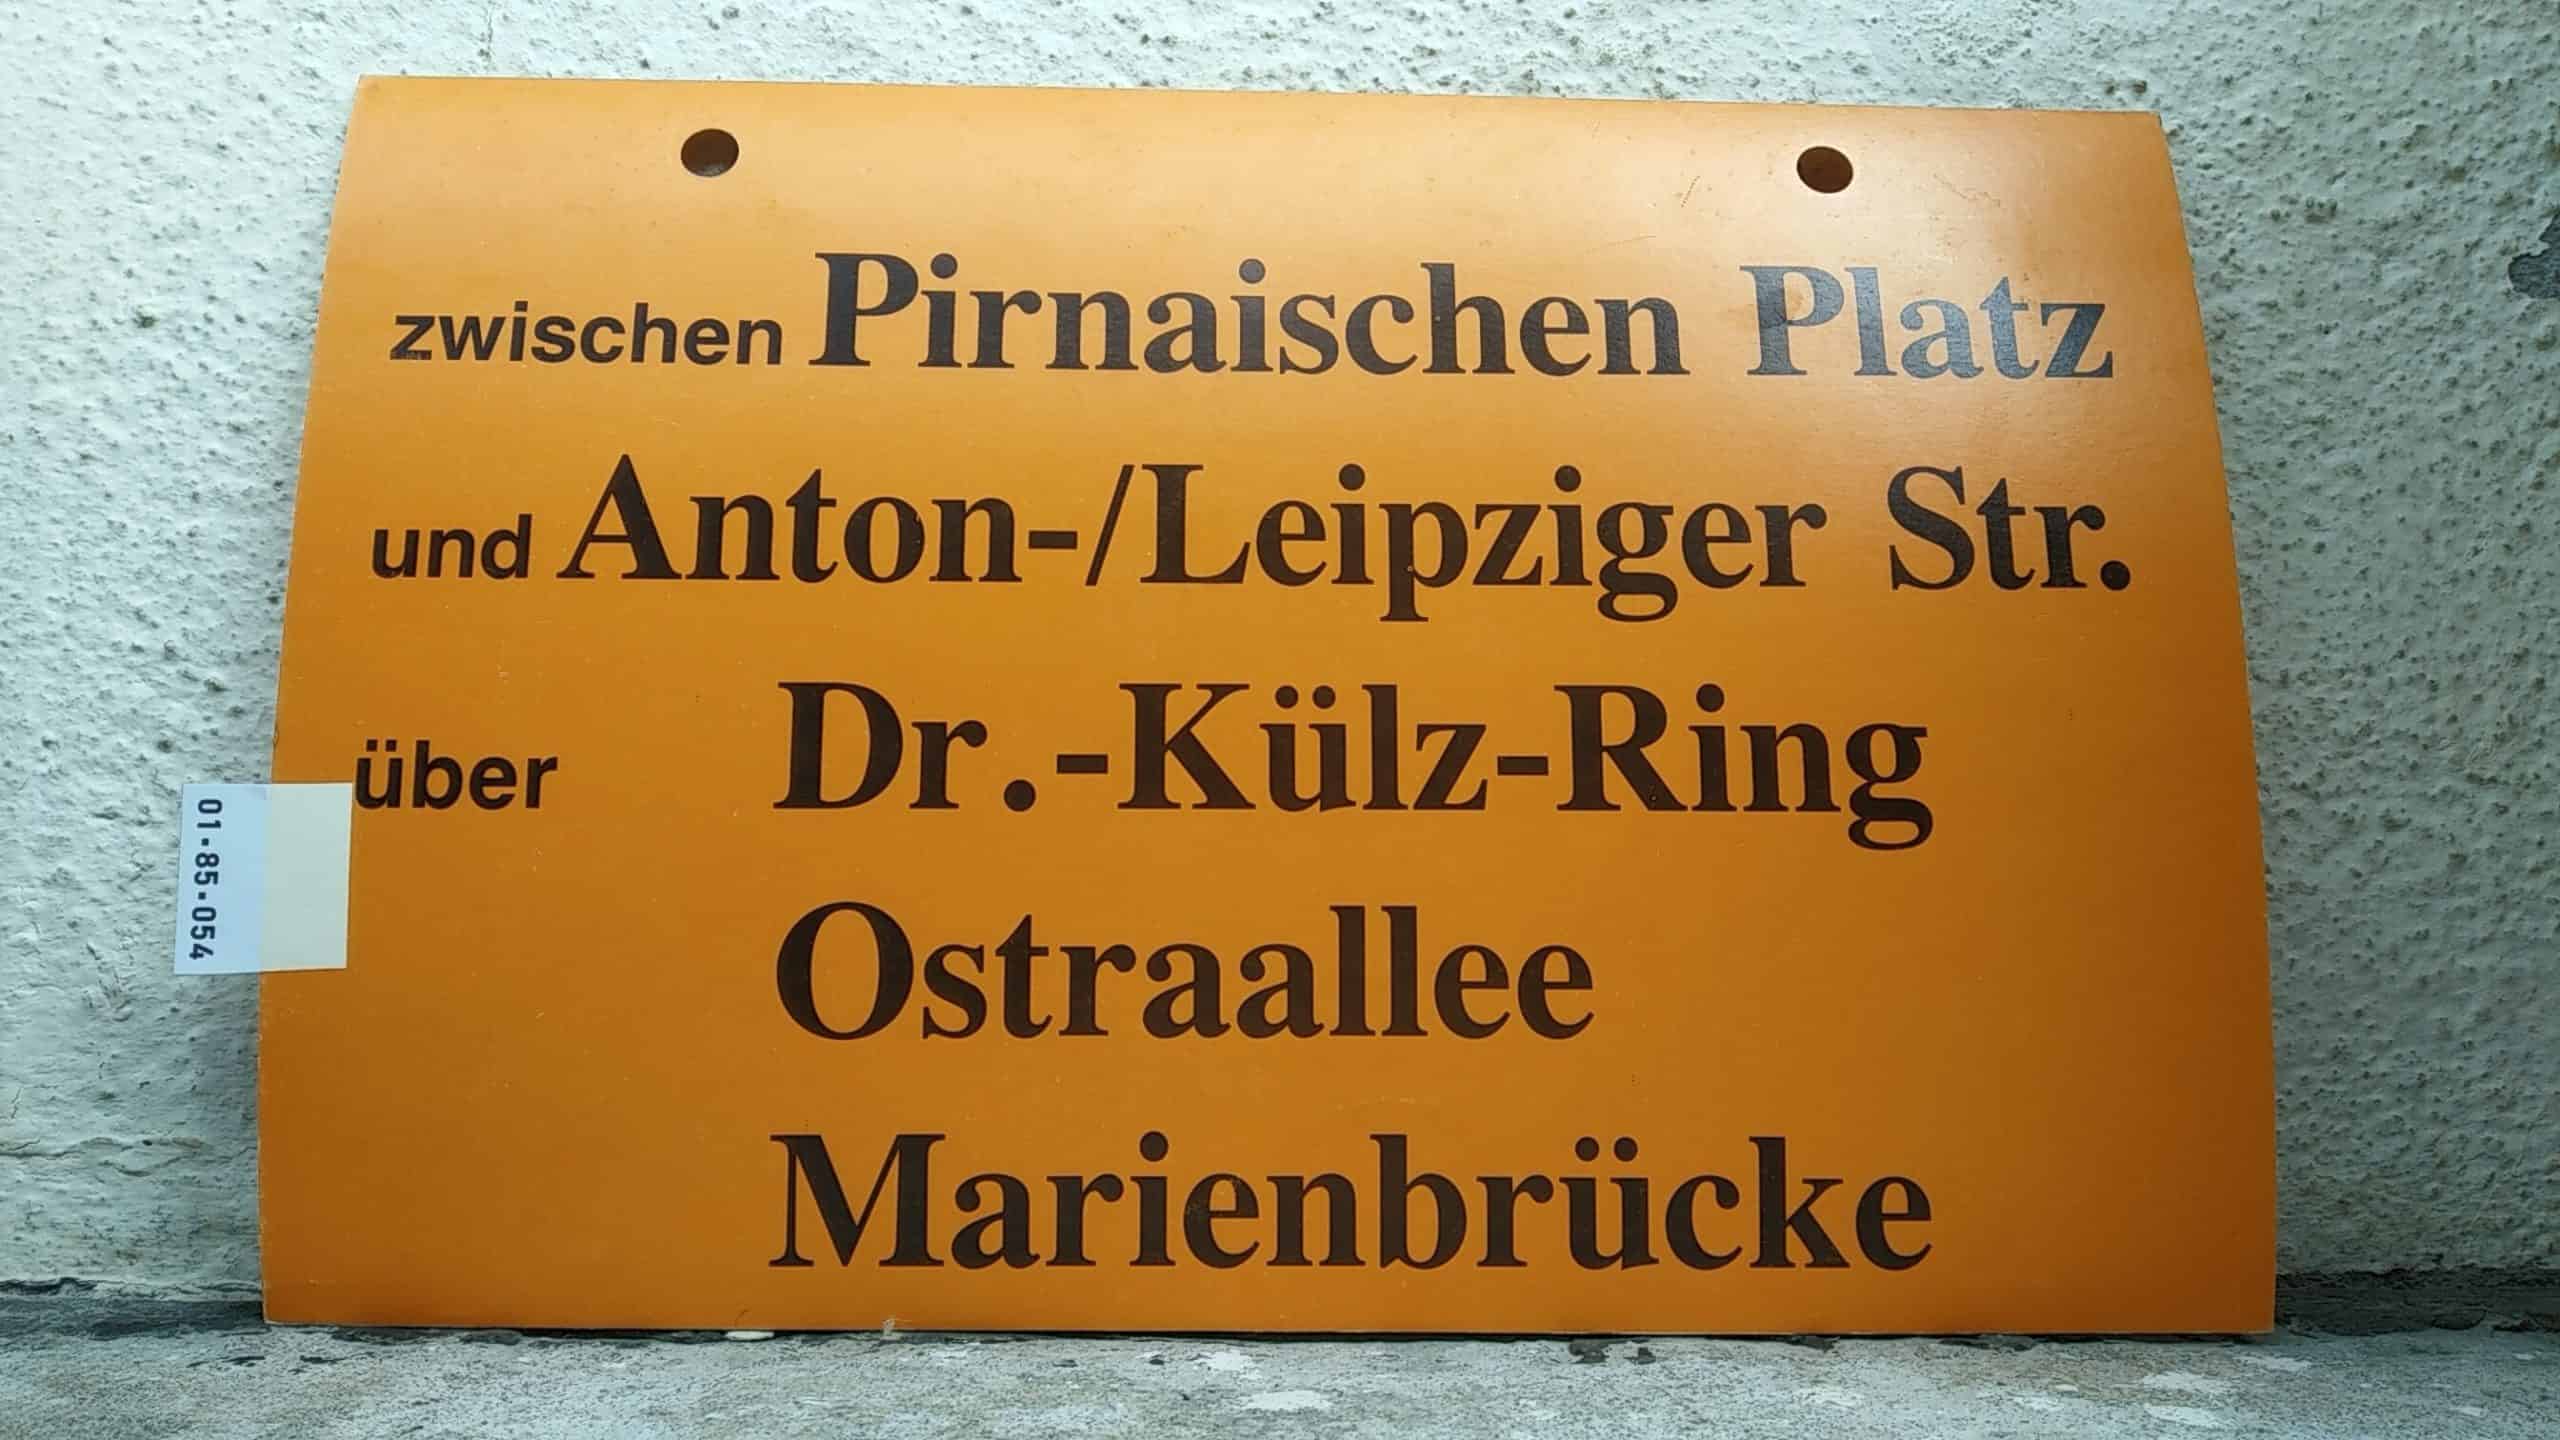 Ein seltenes Straßenbahn-Umleitungsschild aus Dresden: zwischen Pirnaischen Platz und Anton-/Leipziger Str. über Dr.-Külz-Ring Ostraallee Marienbrücke